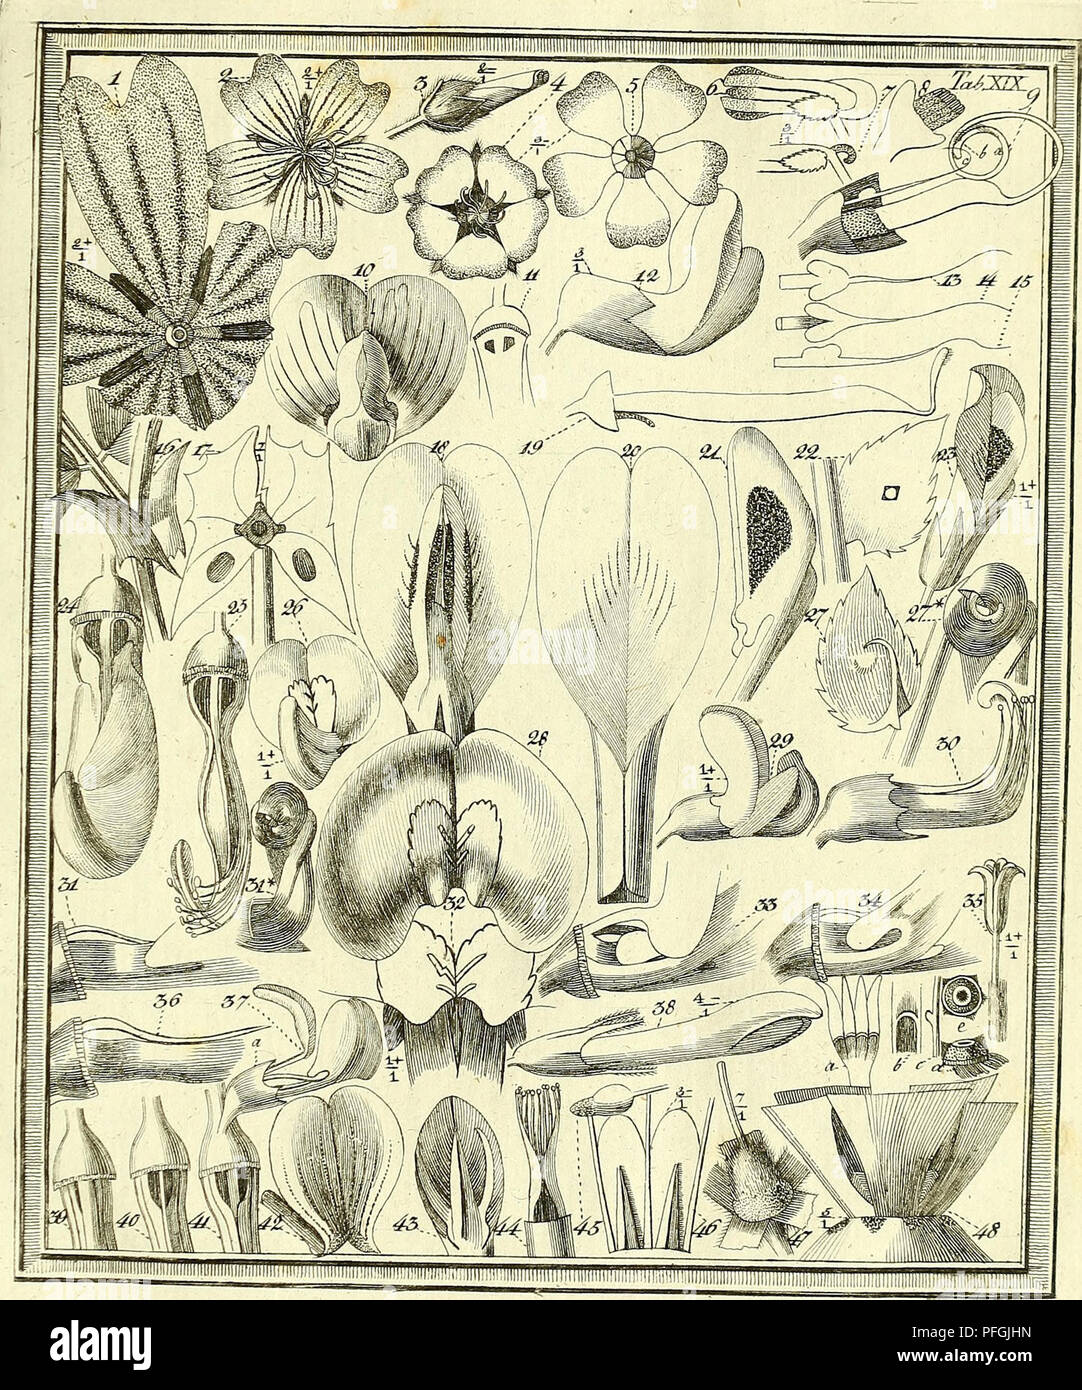 . Das entdeckte Geheimniss der Natur im Bau und in der Befruchtung der Blumen. La botanica; fiori; la fecondazione di piante. . Si prega di notare che queste immagini vengono estratte dalla pagina sottoposta a scansione di immagini che possono essere state migliorate digitalmente per la leggibilità - Colorazione e aspetto di queste illustrazioni potrebbero non perfettamente assomigliano al lavoro originale. Sprengel, Christian Konrad, 1750-1816; Capieux, Johann Stephan, 1748-1813, incisore; Jäck, C. (Carl), incisore; Arndt, Wilhelm, 1750-1813, incisore; Wohlgemuth, A. , incisore; Lehmann, C. A. , fl. 1803, ex proprietario. DSI; Burndy Library, donatore. DSI. Berlin Foto Stock